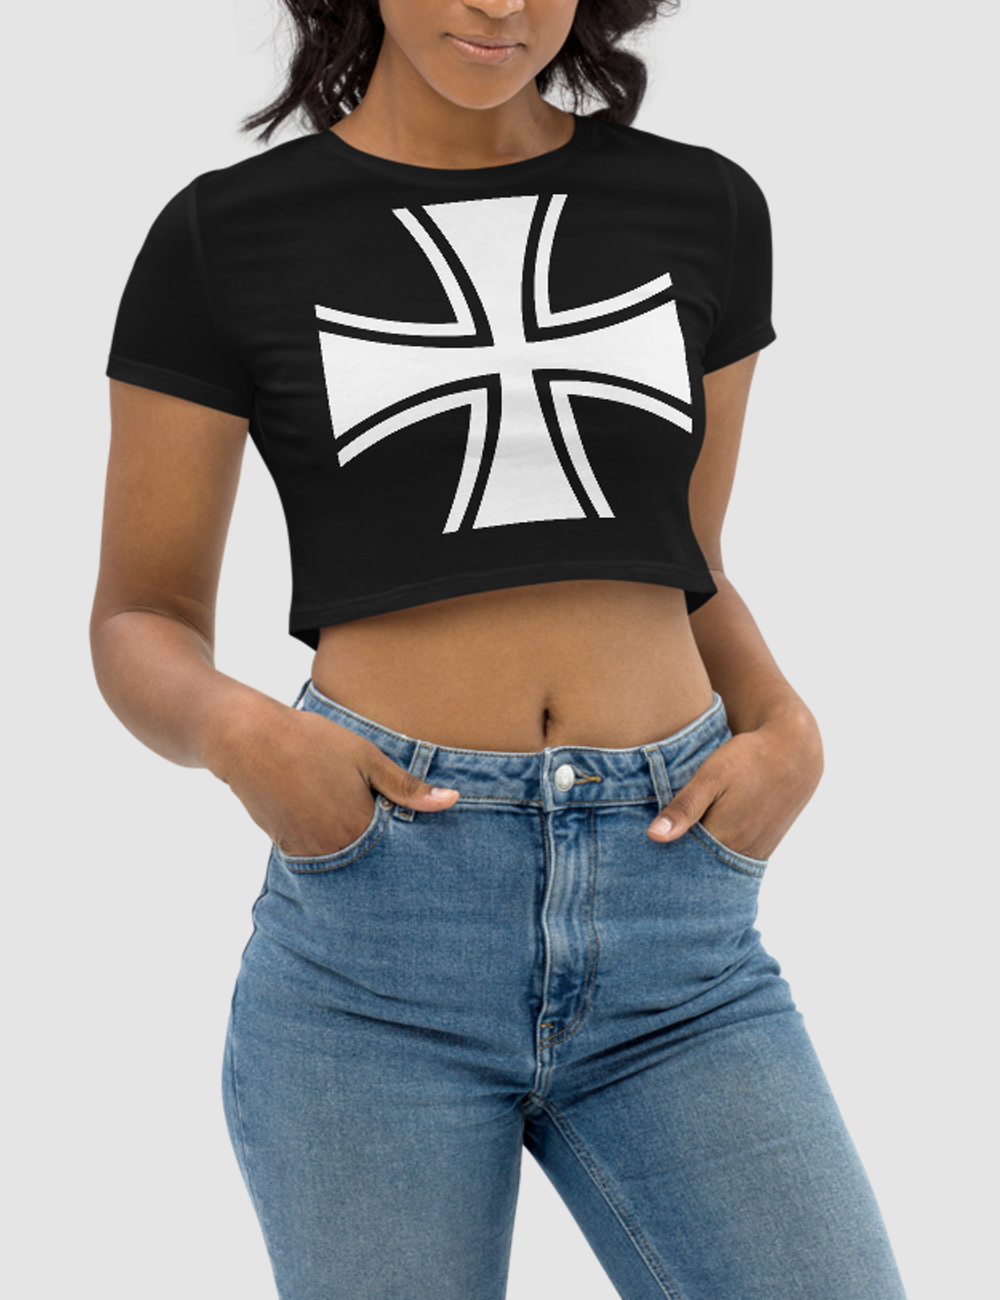 German Iron Cross | Women's Crop Top T-Shirt OniTakai